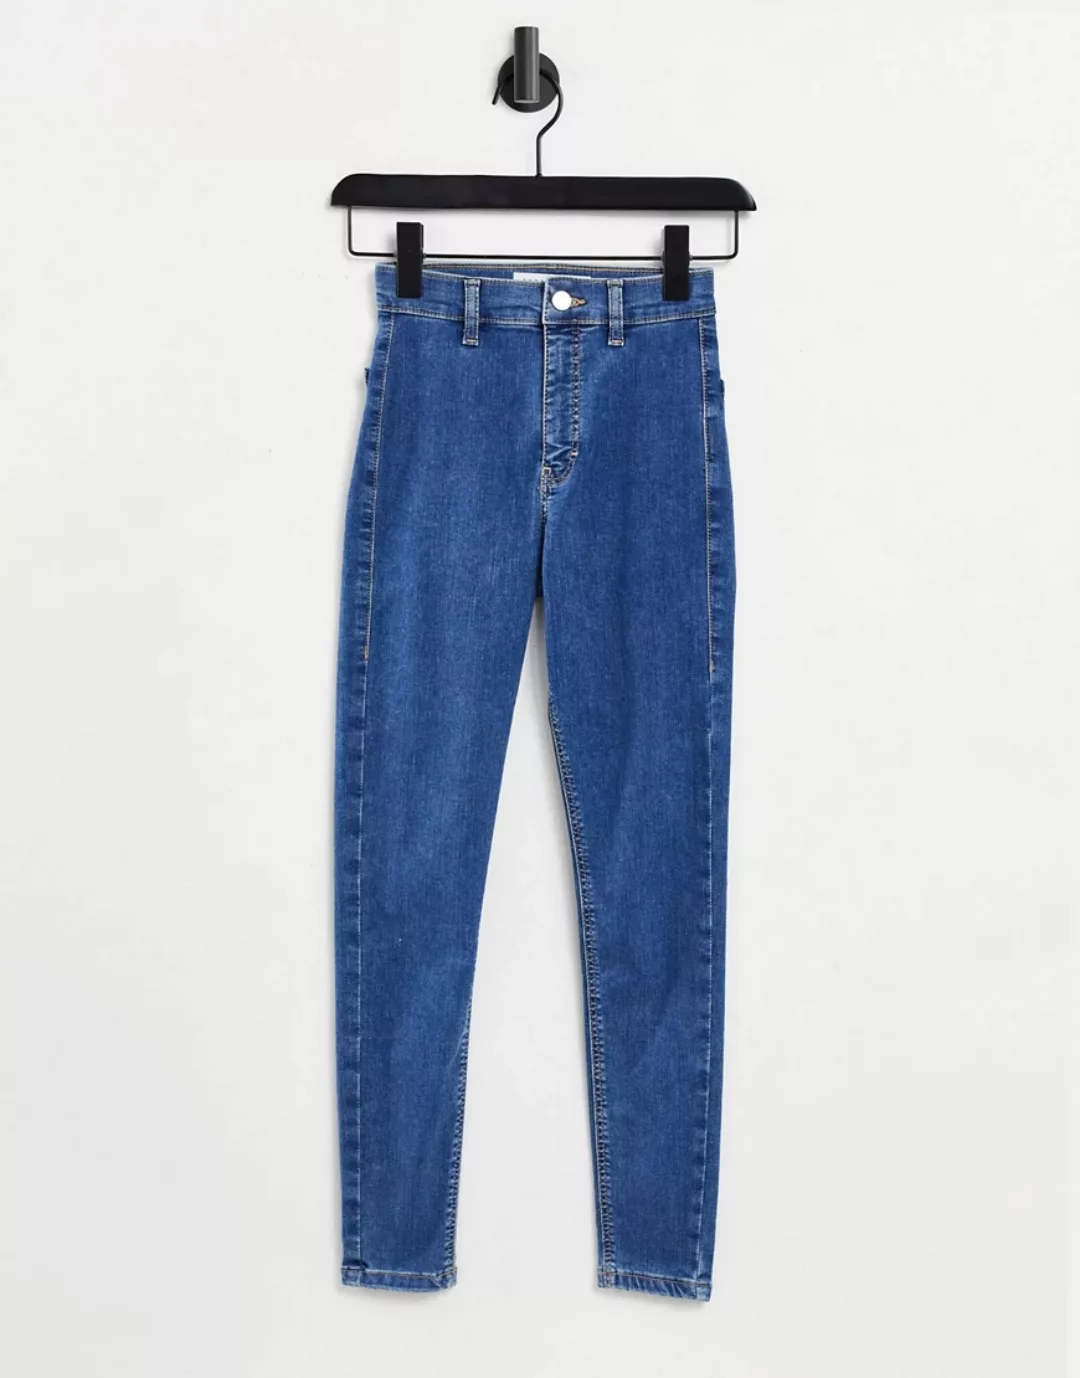 Topshop – Joni – Jeans aus einem recycelten Baumwollmix in mittlerer Waschu günstig online kaufen